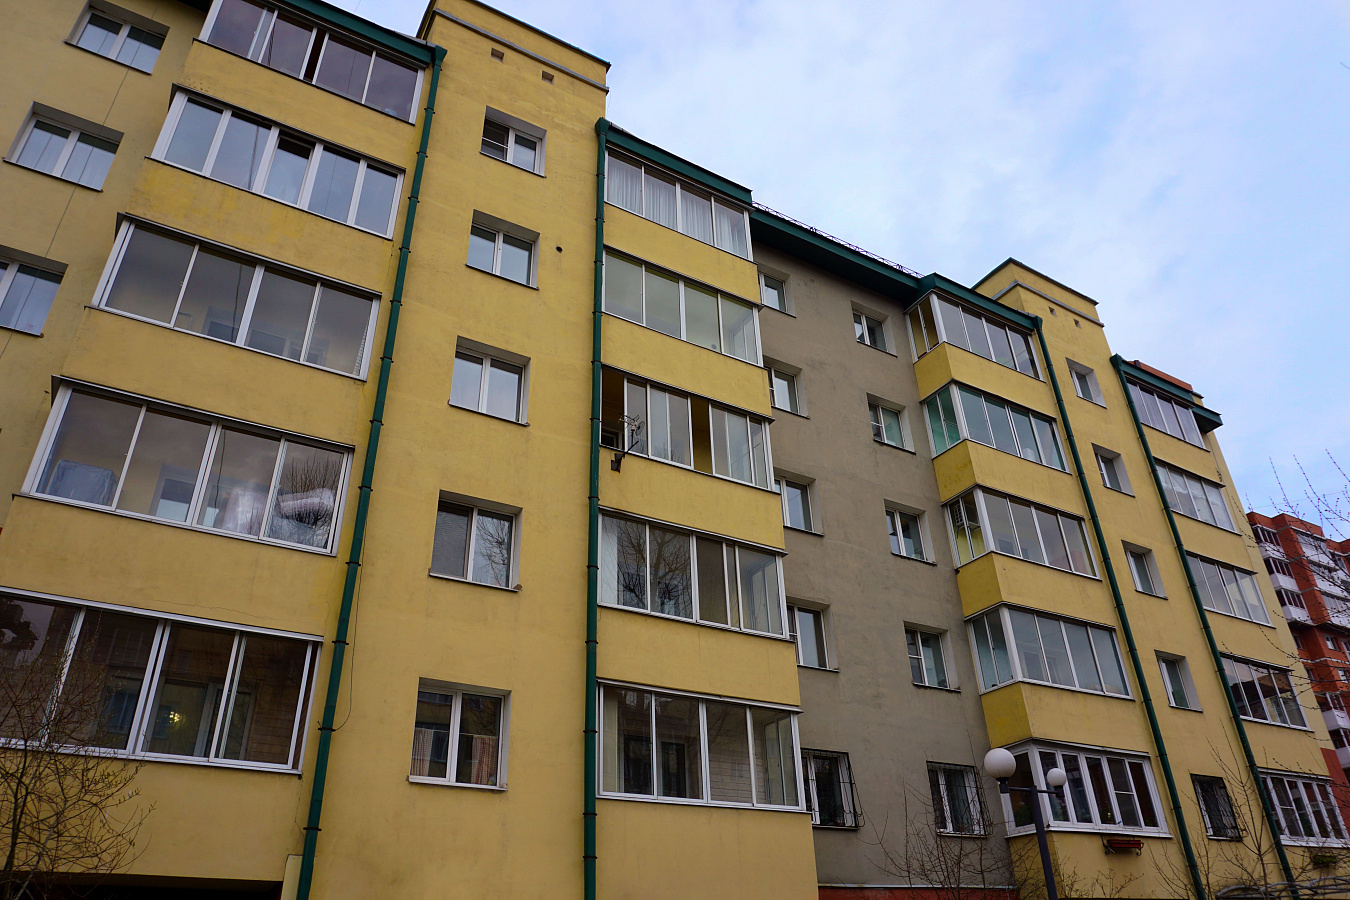 Группа жилых домов по ул. Пискунова в г. Иркутске 2